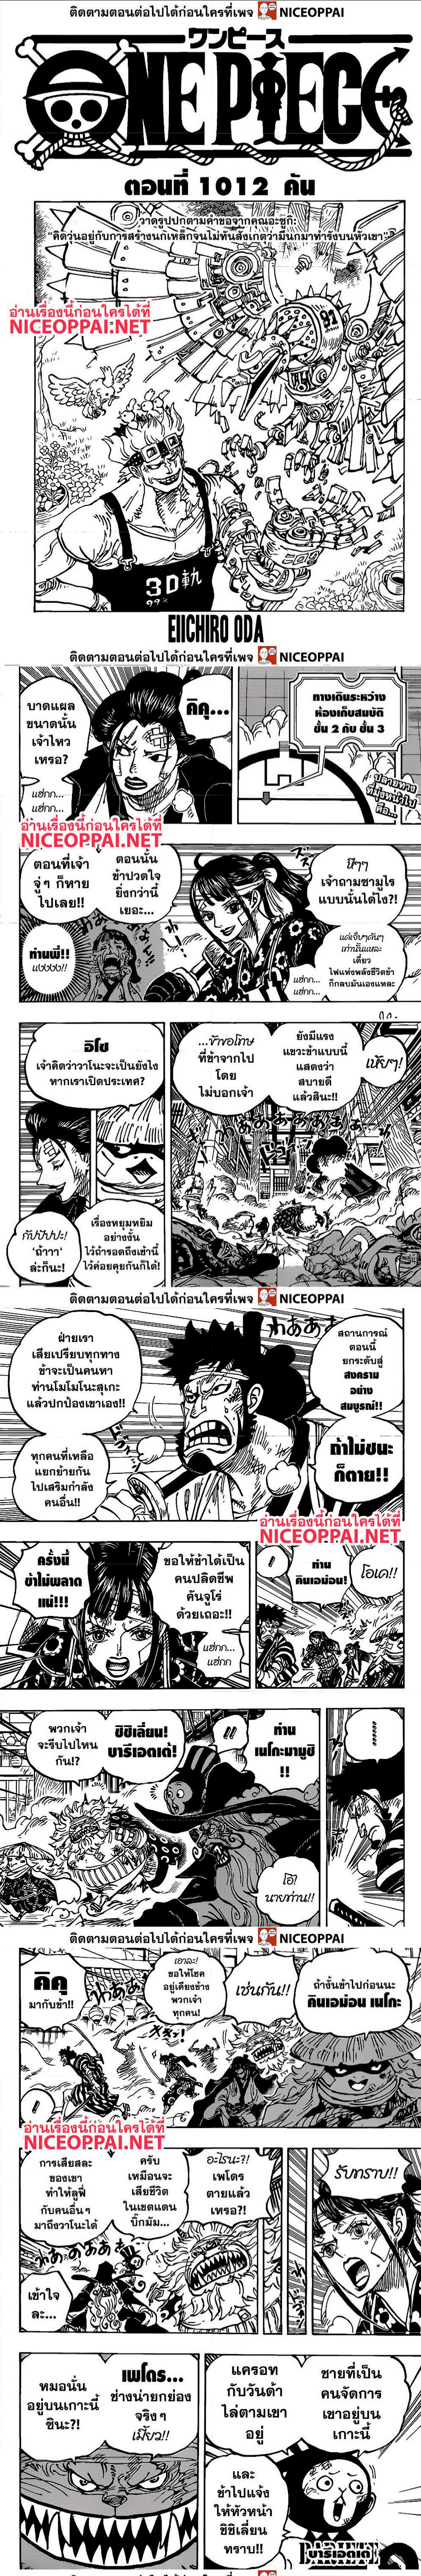 One Piece1012 (1)